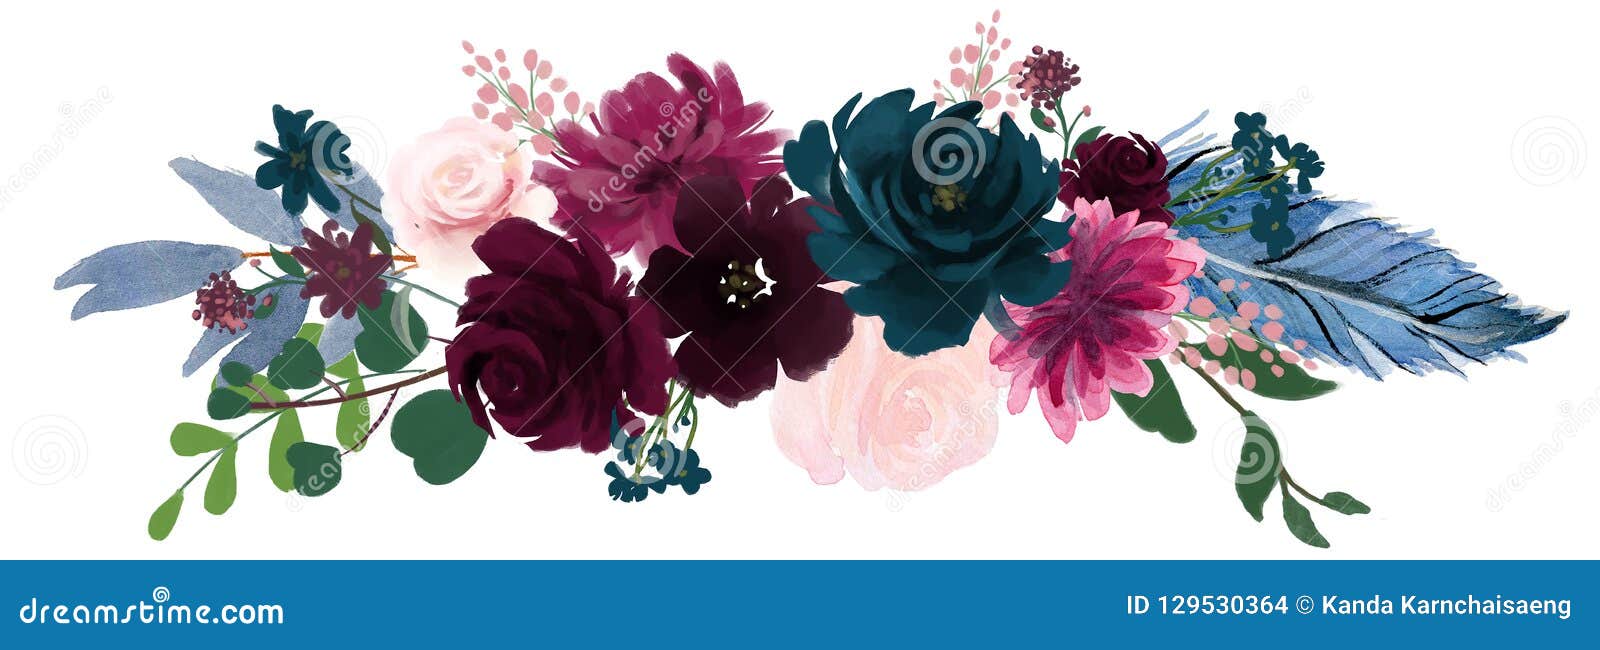 Rosa Floral De La Composición Del Vintage De La Acuarela Y Flores Azules Y  Plumas Del Ramo Floral Stock de ilustración - Ilustración de pluma, saludo:  129530364